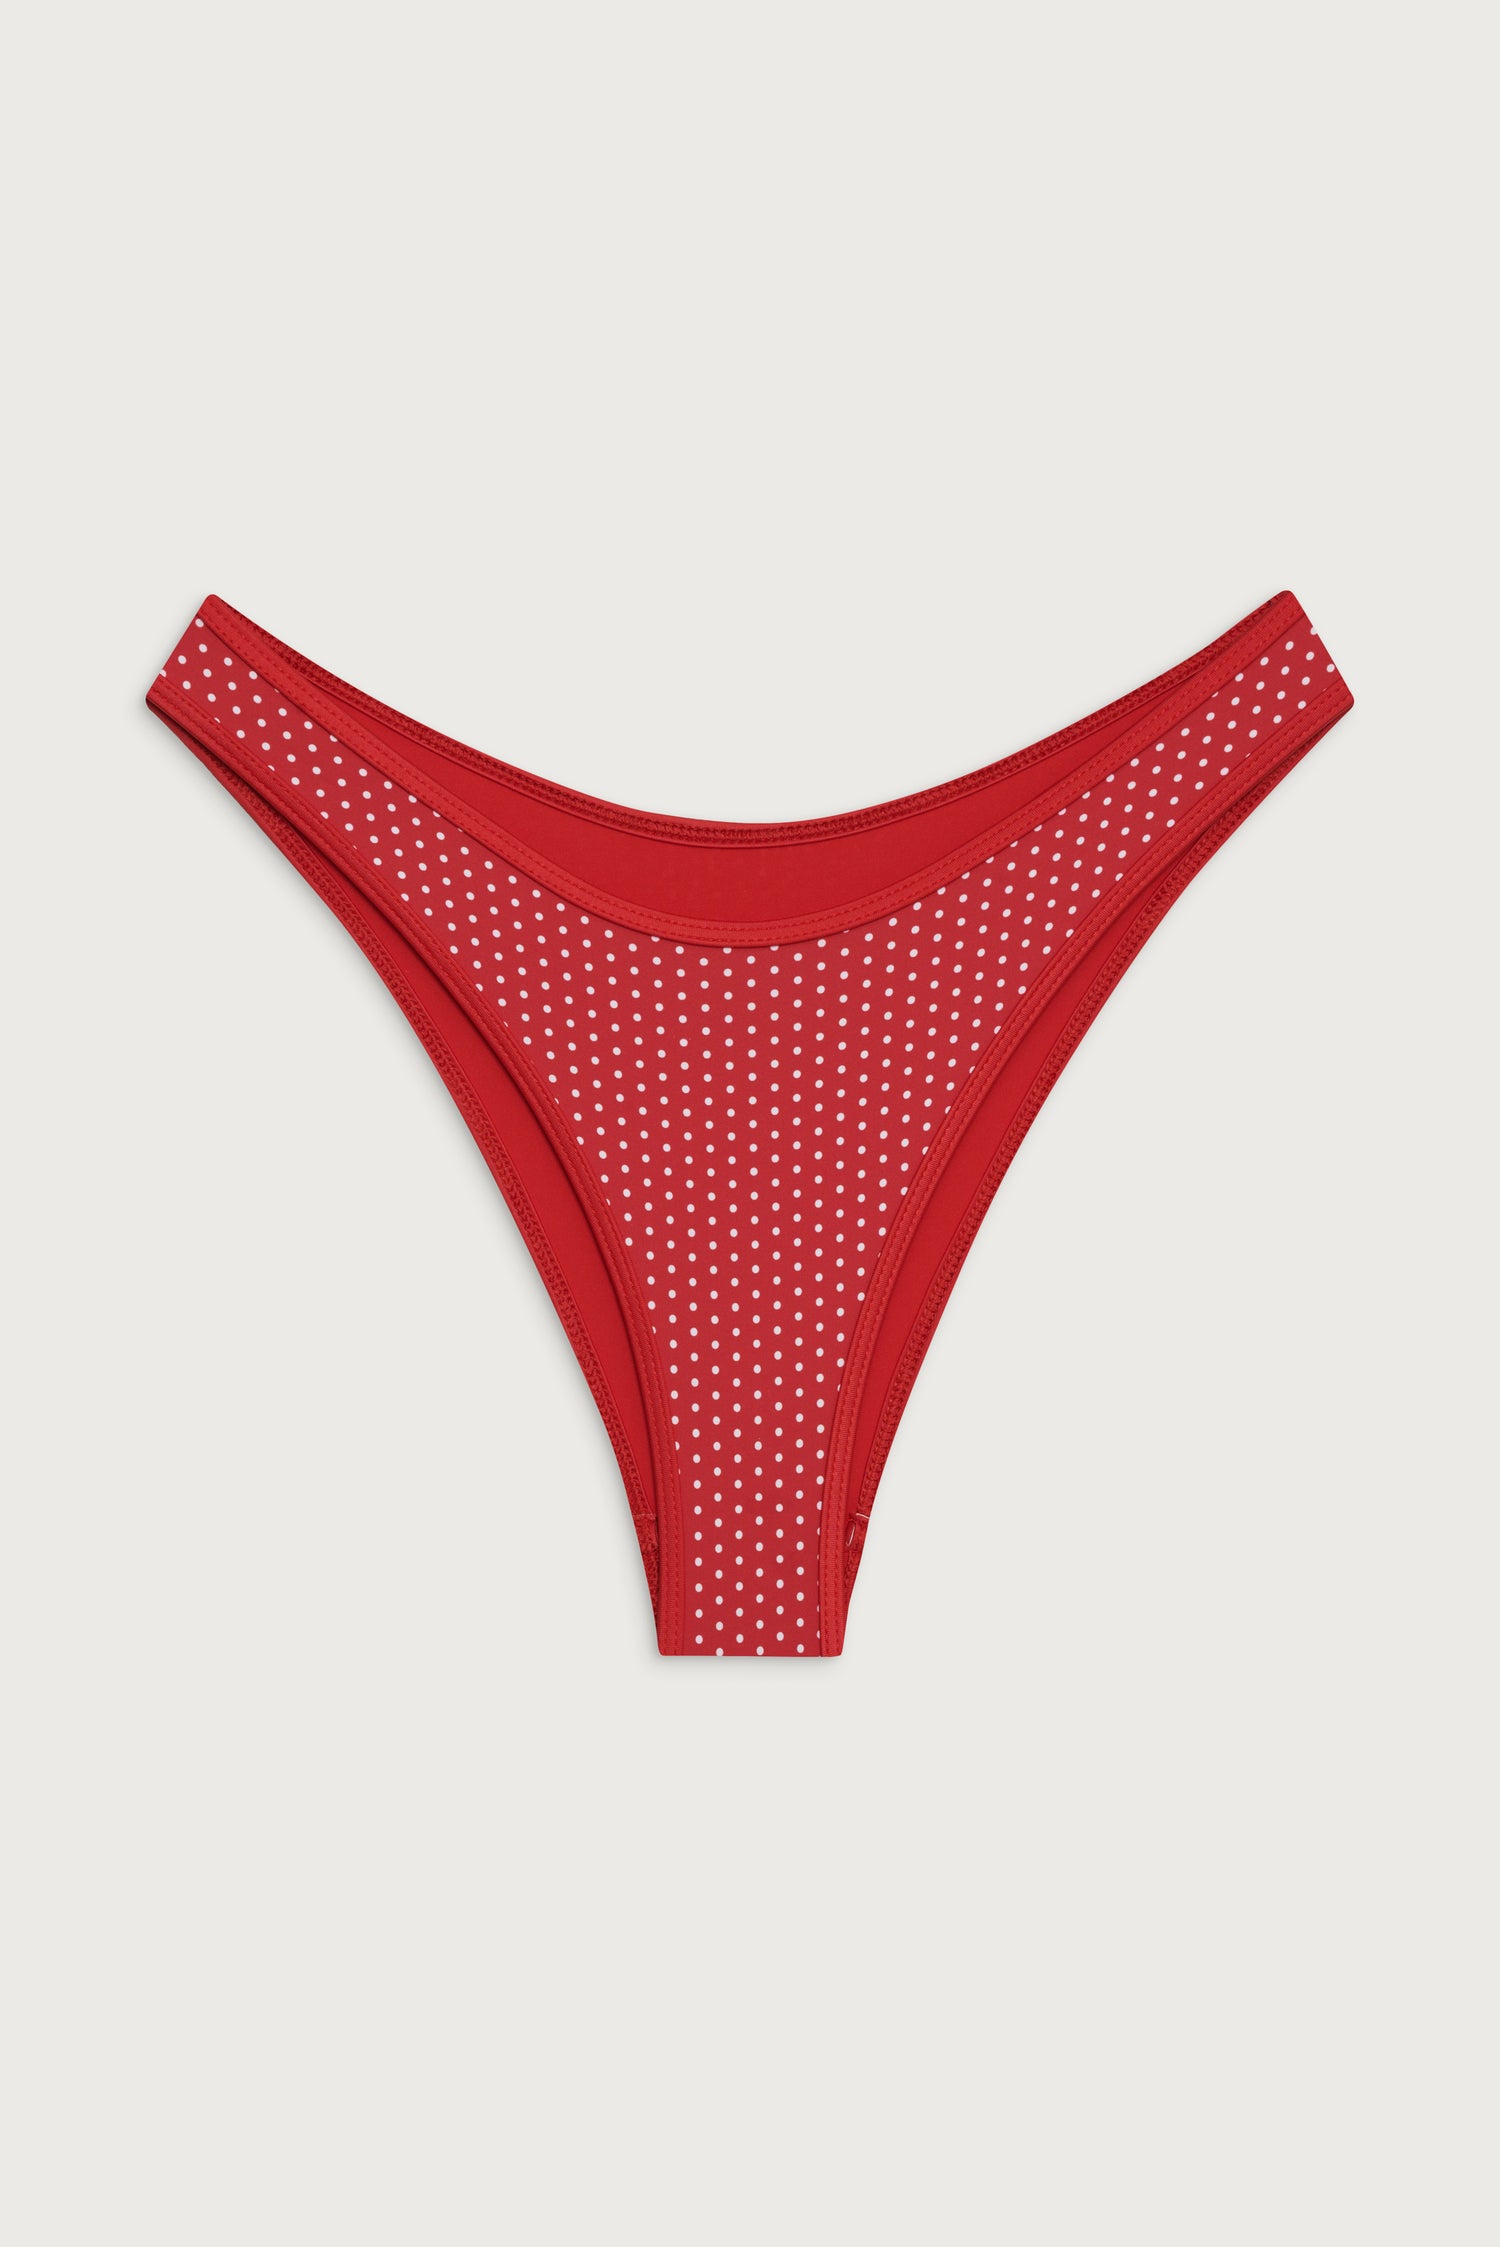 Dove Classic Bikini Bottom - Scarlet Dot